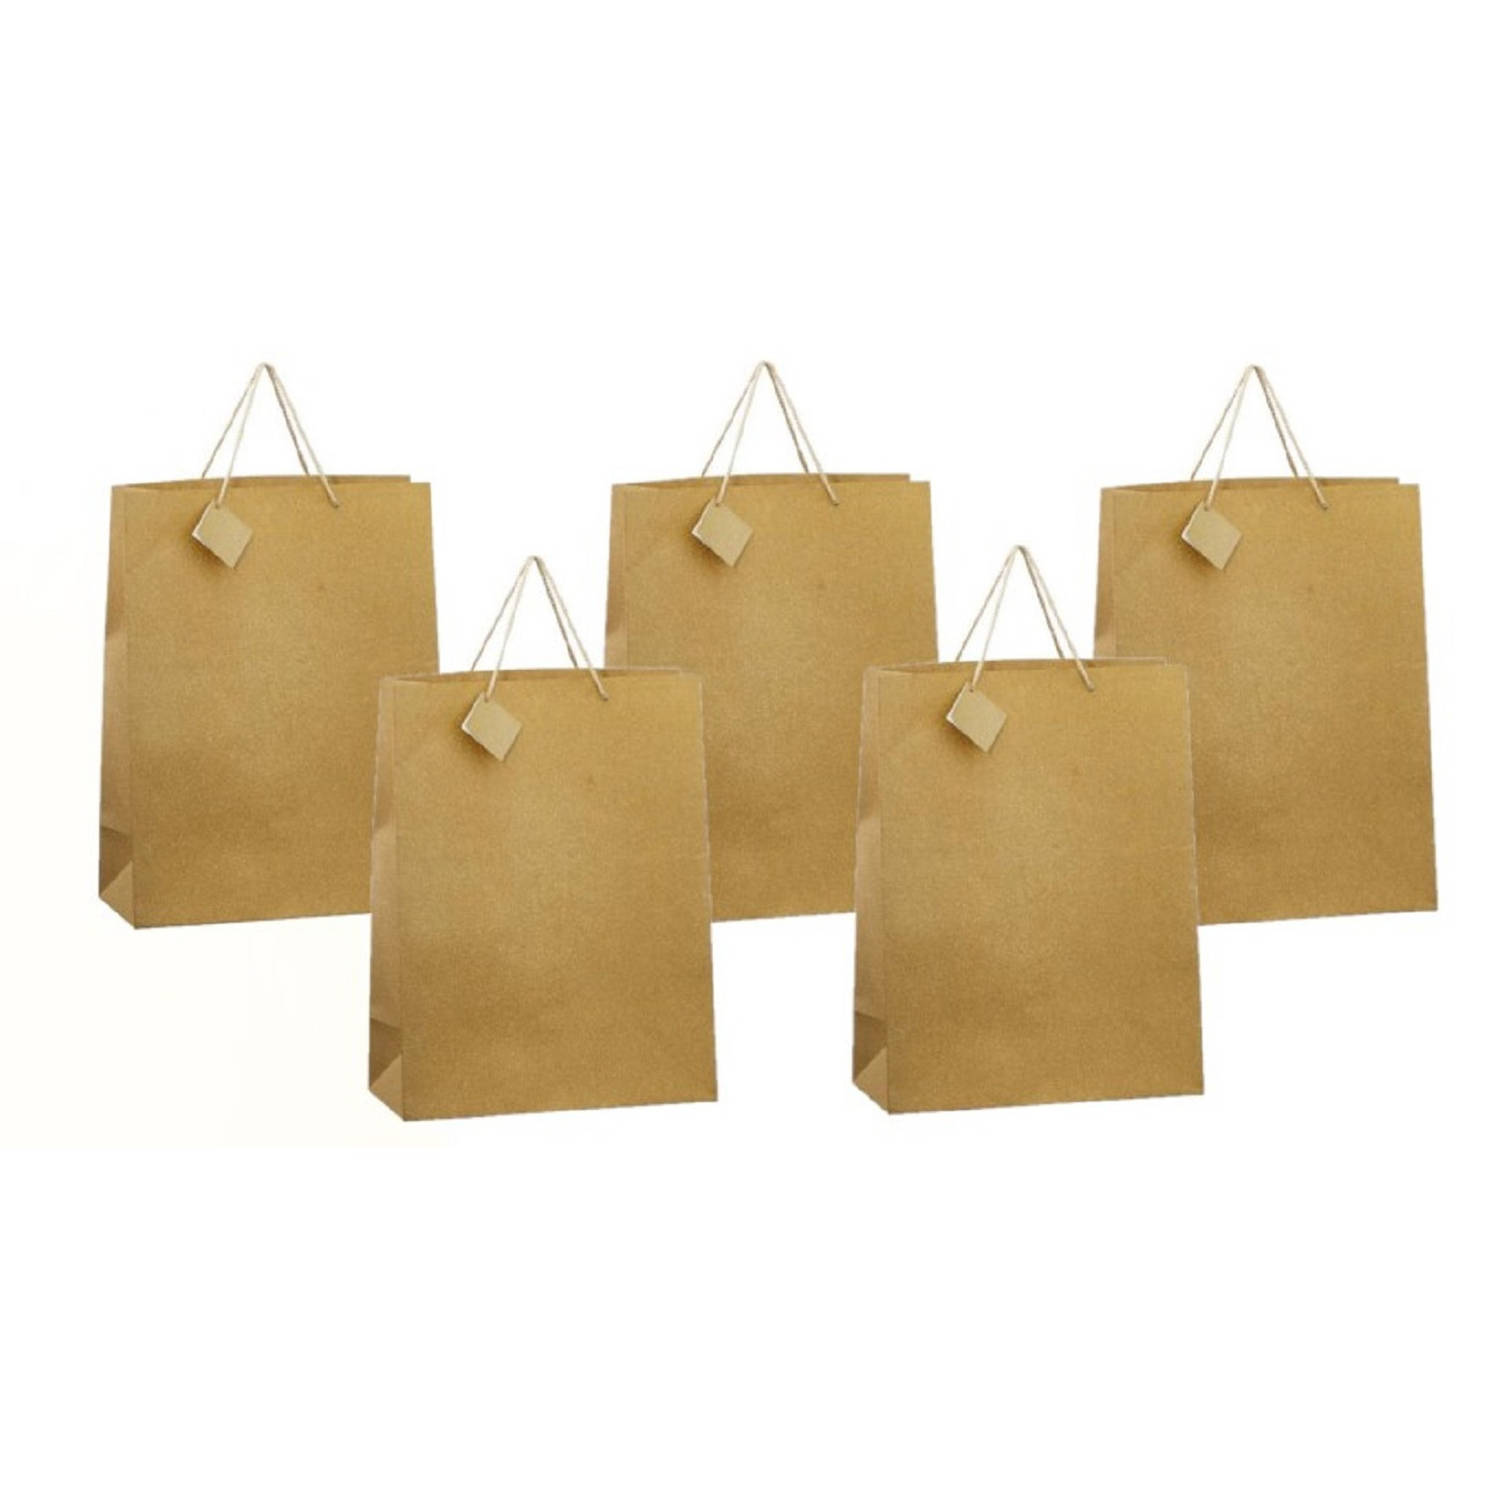 Paragraaf onbetaald Omgeving 5x stuks luxe gouden papieren giftbags/tasjes met glitters 30 x 29 cm -  cadeautasjes | Blokker